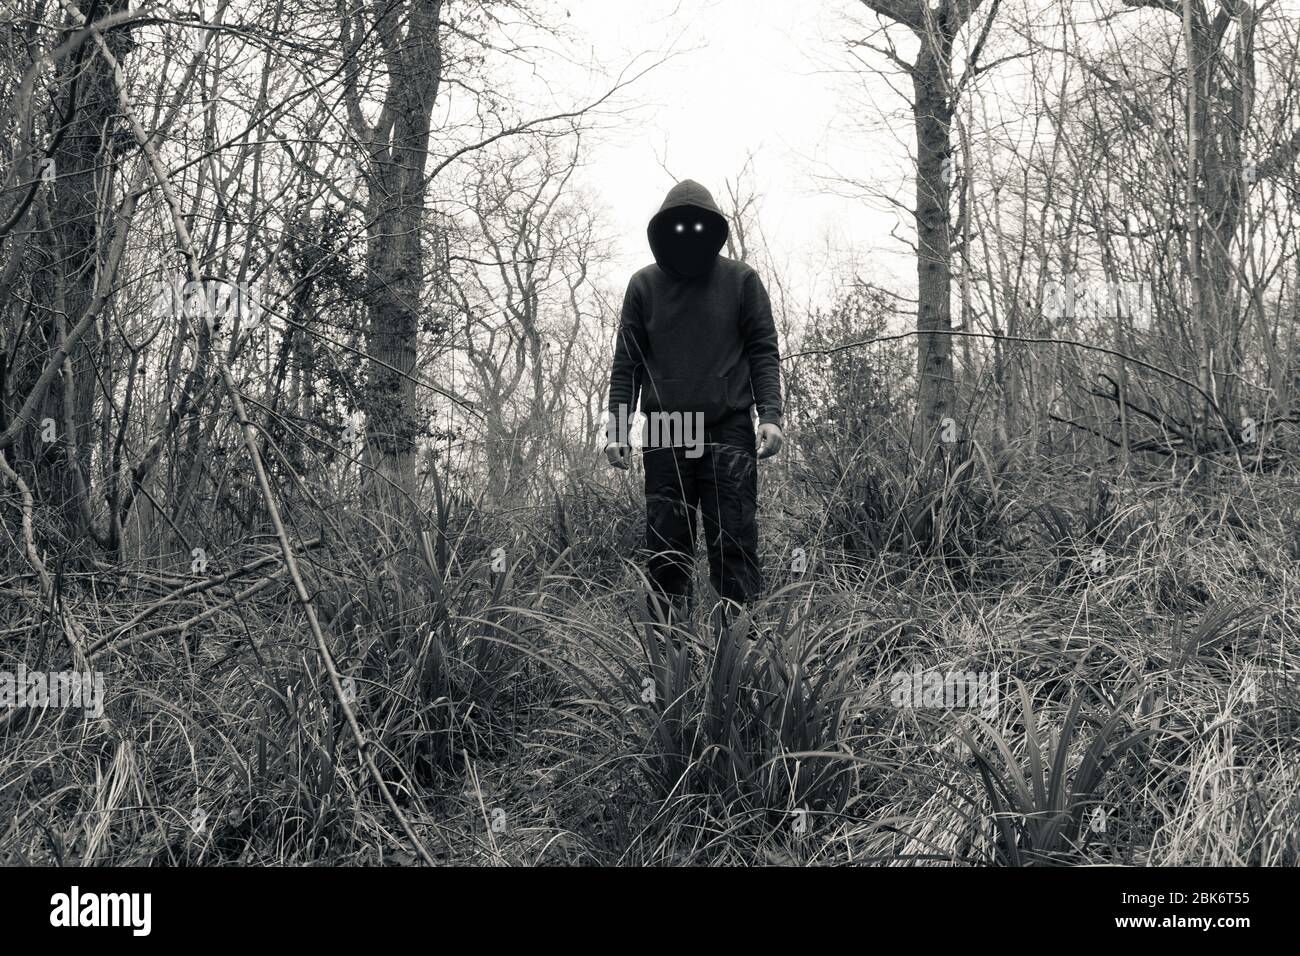 Una figura spaventosa e con cappuccio, con occhi malvagi e spazi neri vuoti dove dovrebbe essere il suo volto, in piedi in una foresta in inverno. Con una modifica vintage. Foto Stock